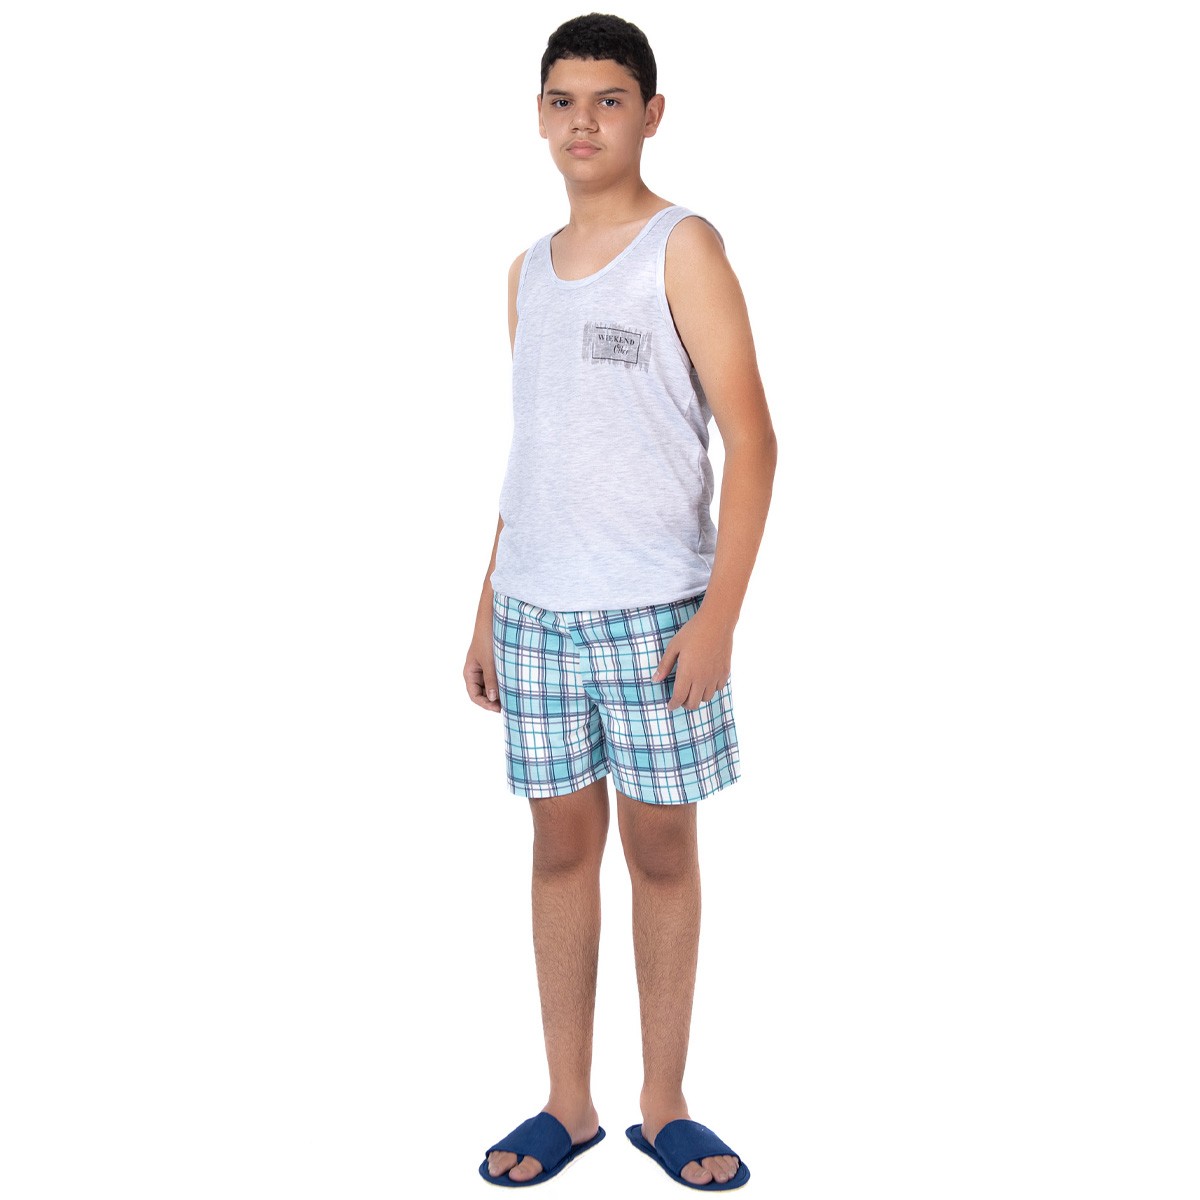 Pijama juvenil de verão para menino modelo regata Victory